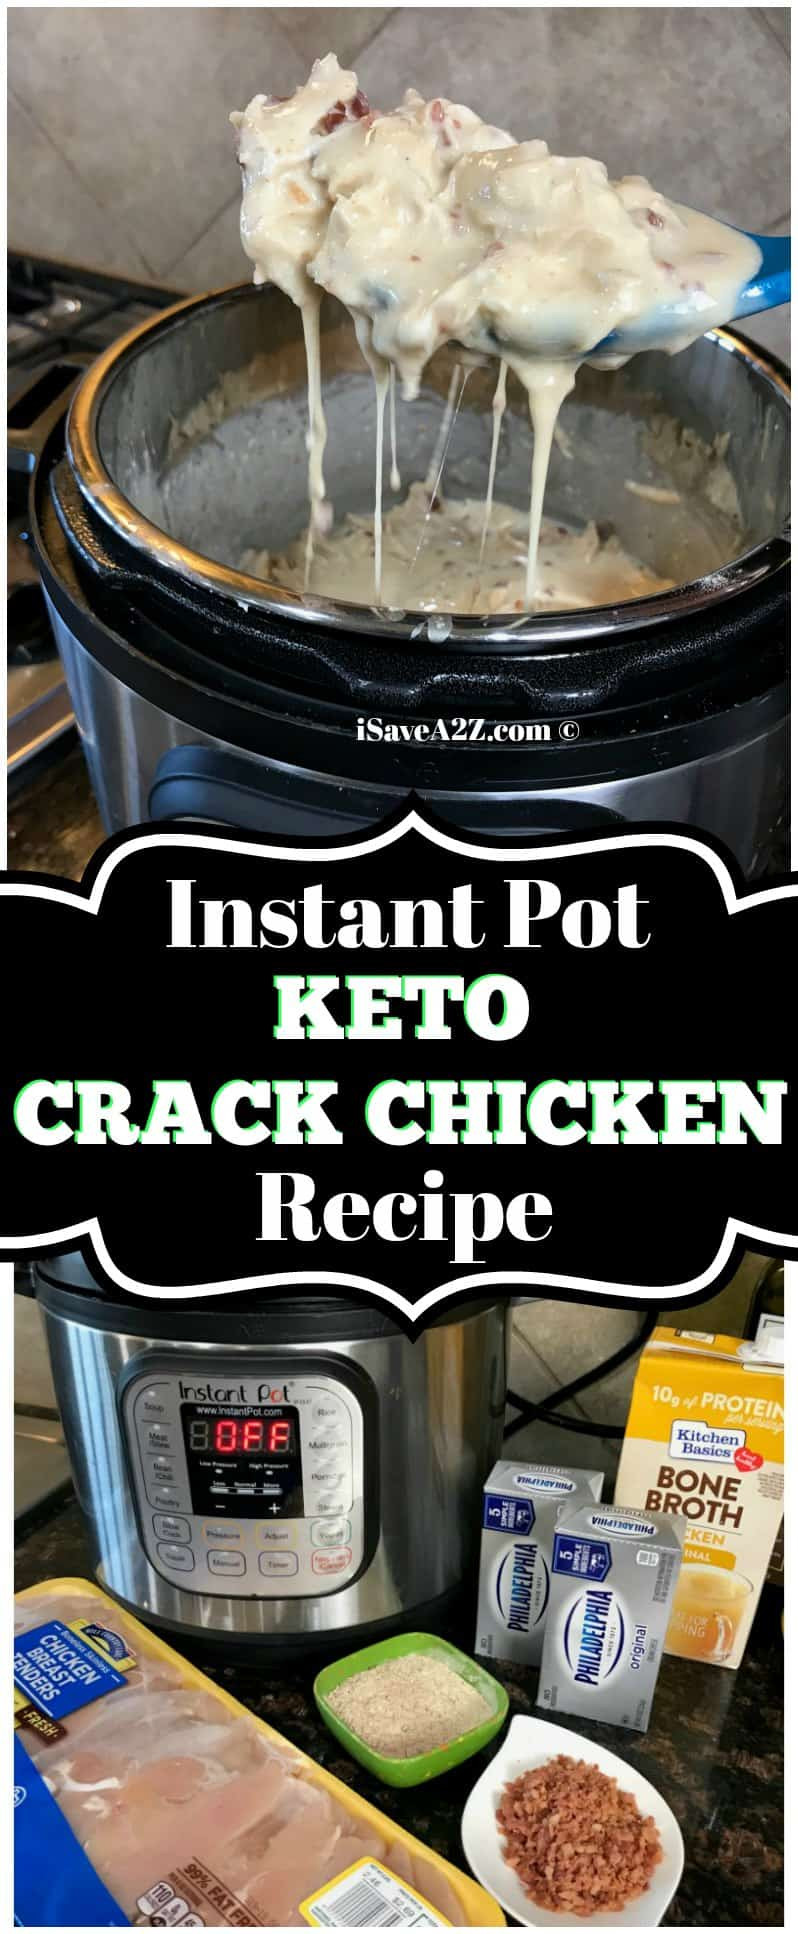 Chicken Keto Instant Pot Recipes
 Instant Pot Keto Crack Chicken Recipe iSaveA2Z